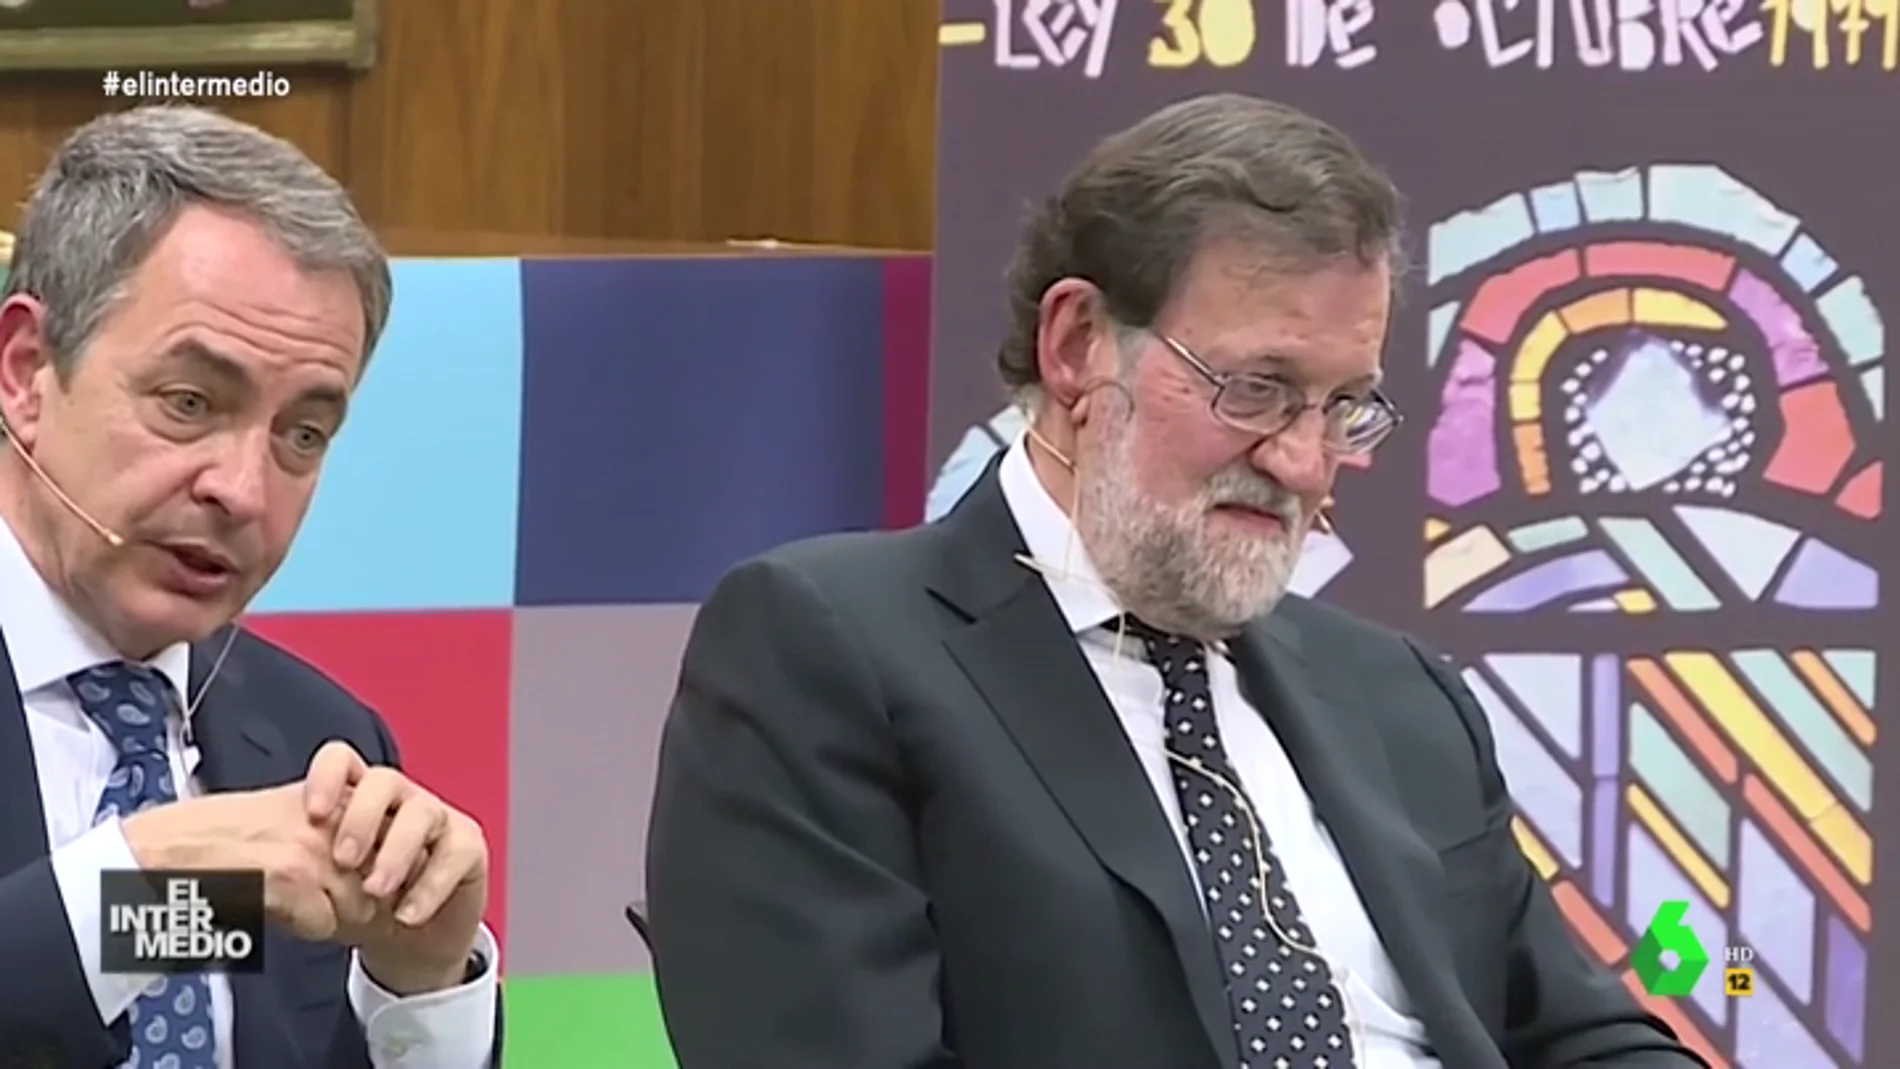 #VídeosManipulados: Descubrimos qué piensa realmente Mariano Rajoy de coloquio con Rodríguez Zapatero